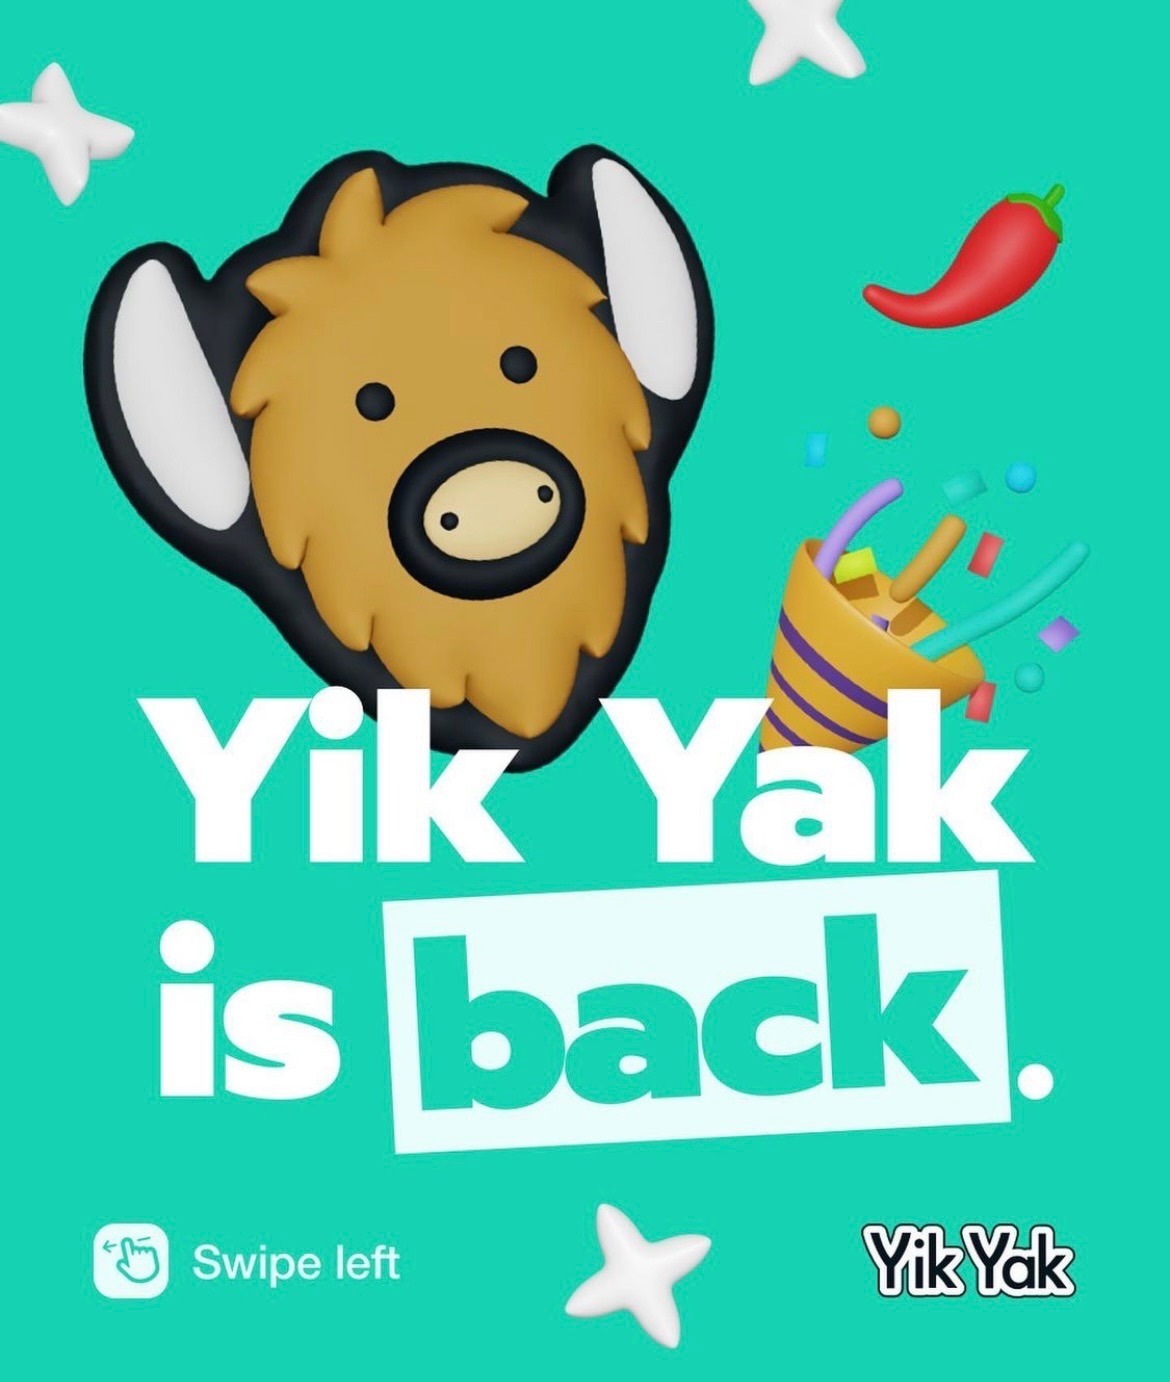 Yik Yak on Instagram. 